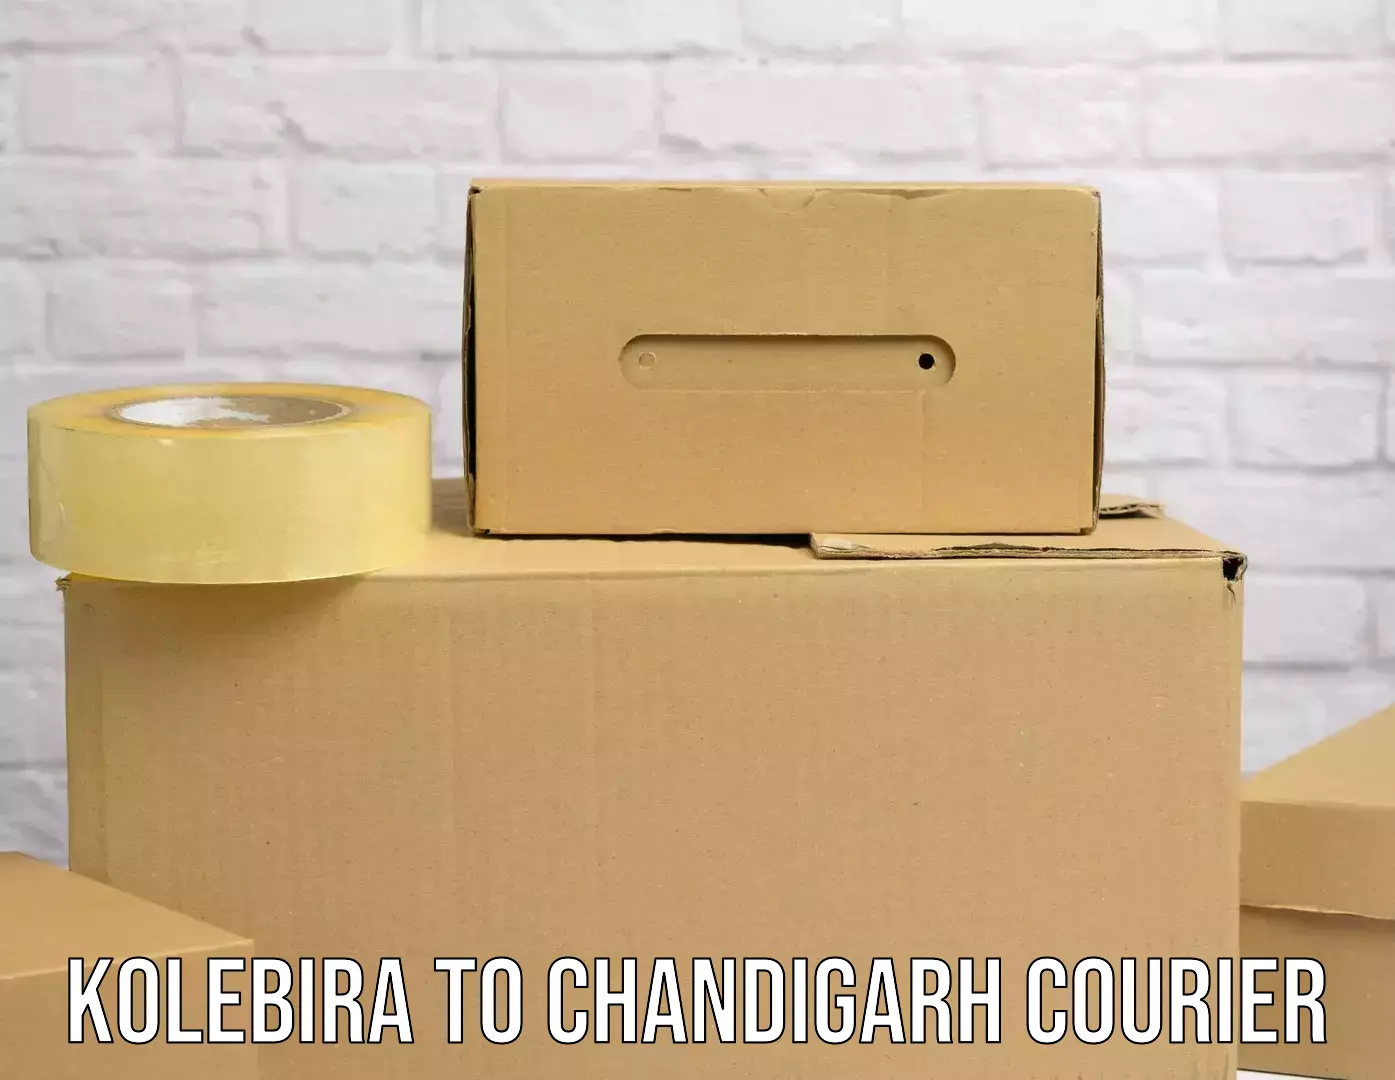 Door-to-door freight service Kolebira to Chandigarh